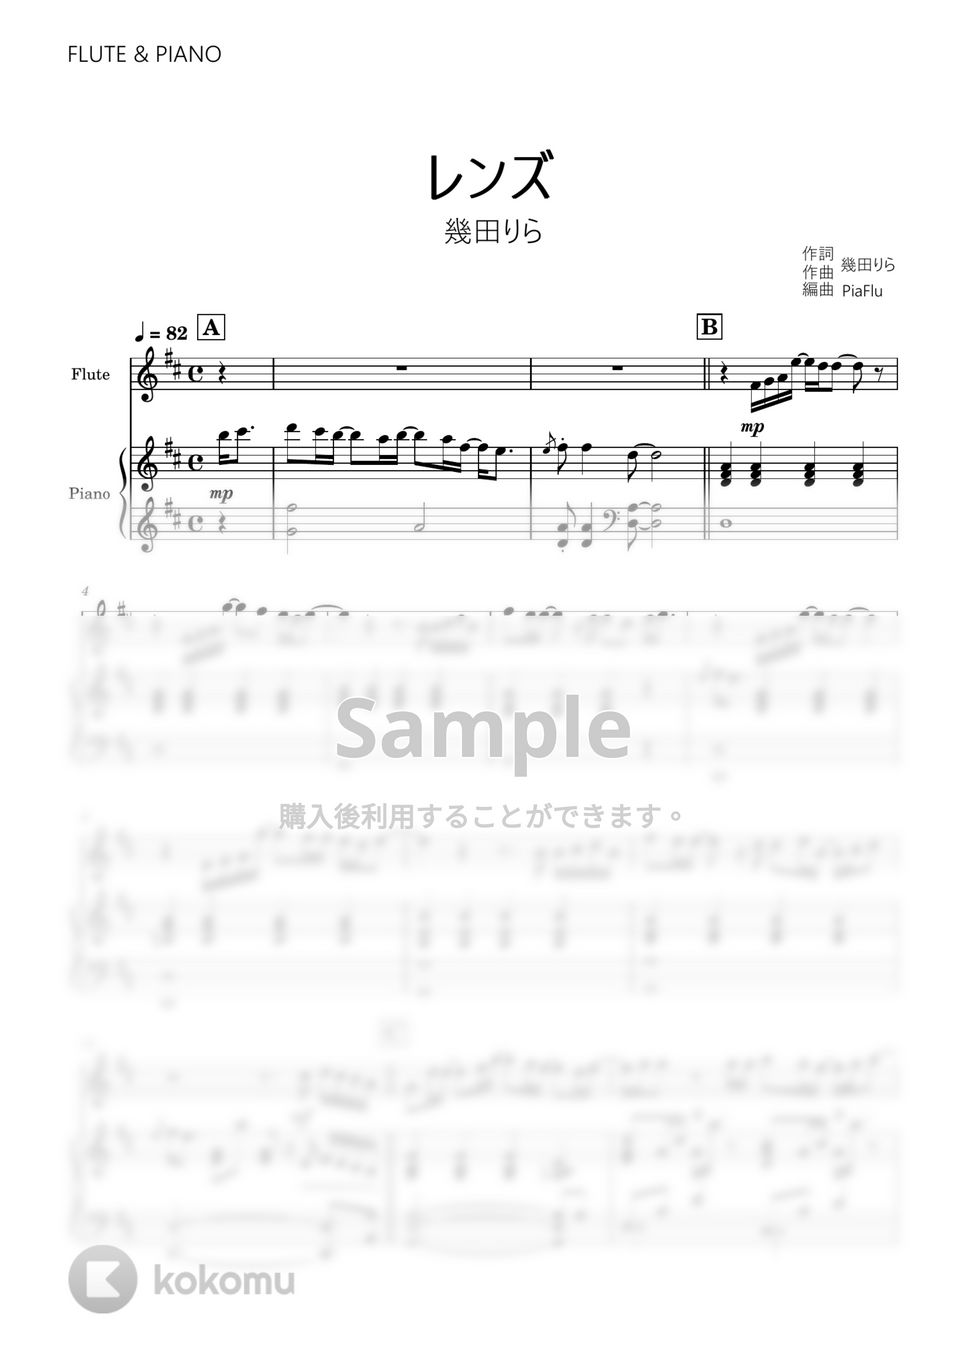 幾田りら - レンズ (フルート&ピアノ伴奏) by PiaFlu